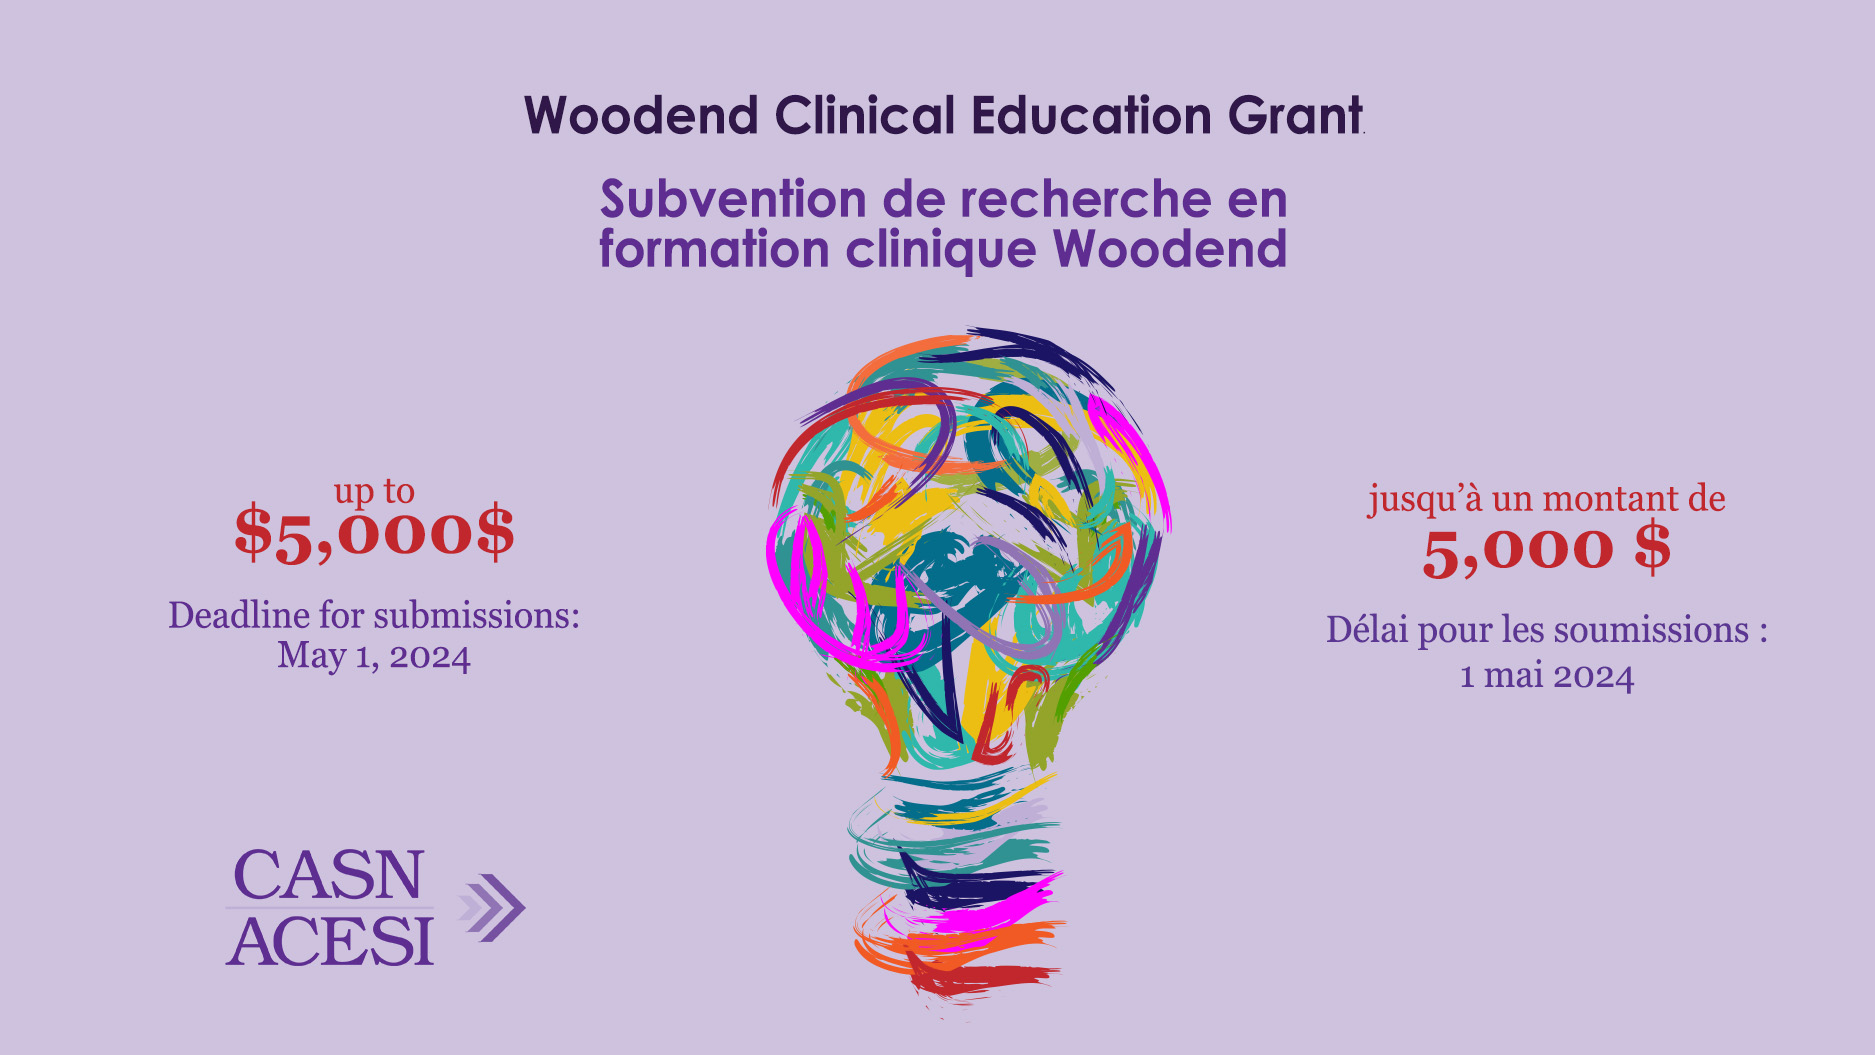 Subvention de recherche en formation clinique Woodend